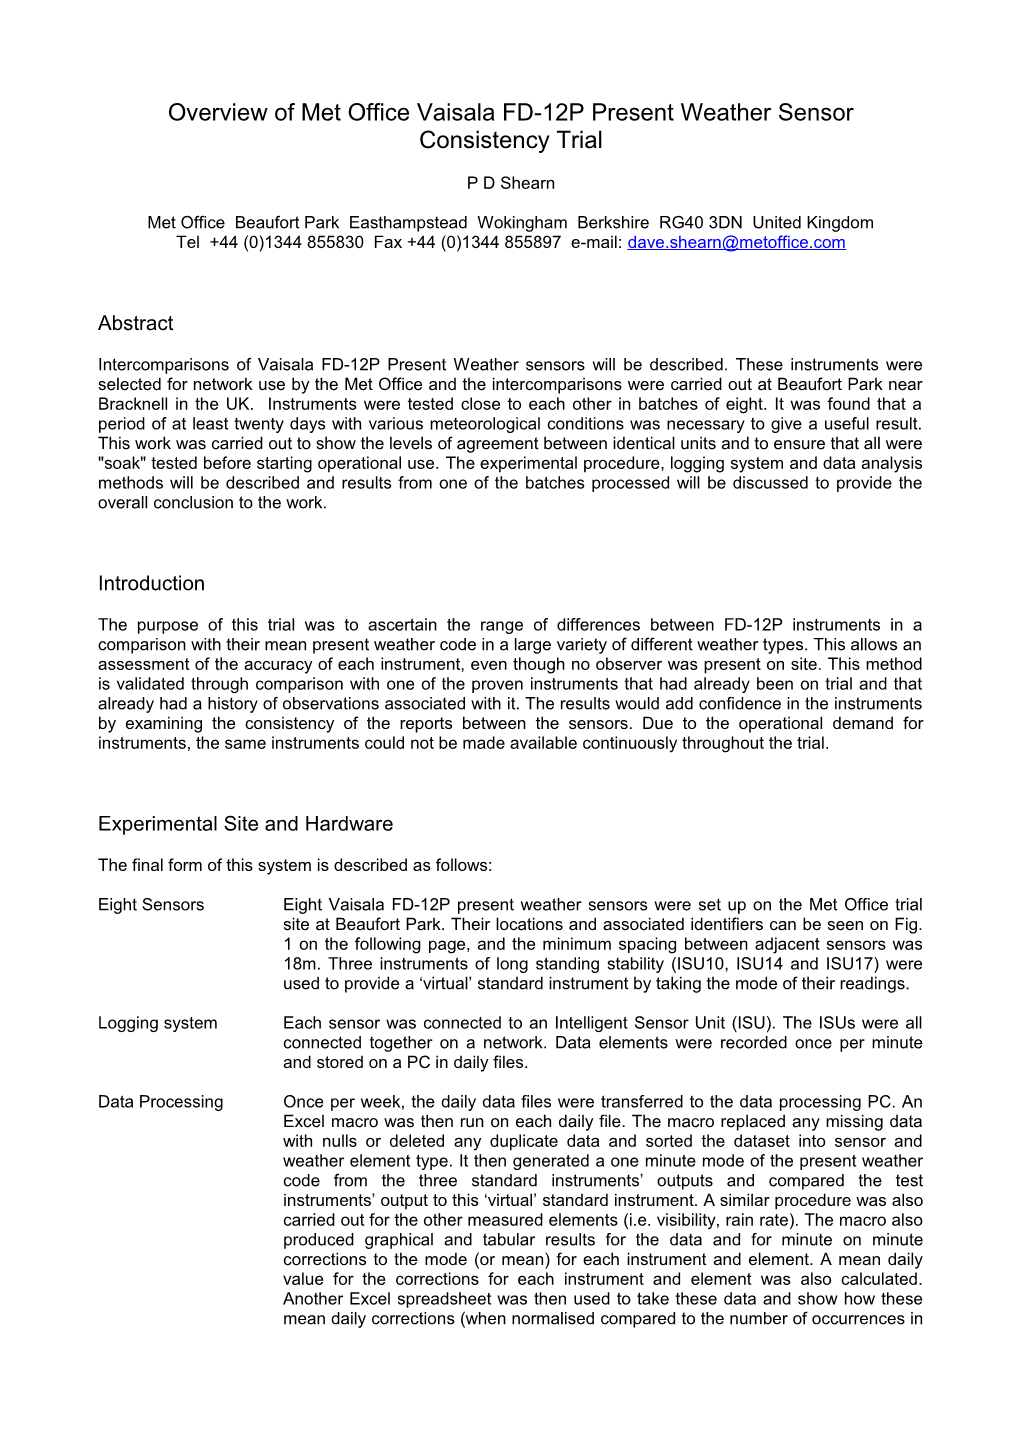 Overview of Met Office Vaisala FD-12P Present Weather Sensor Consistency Trial